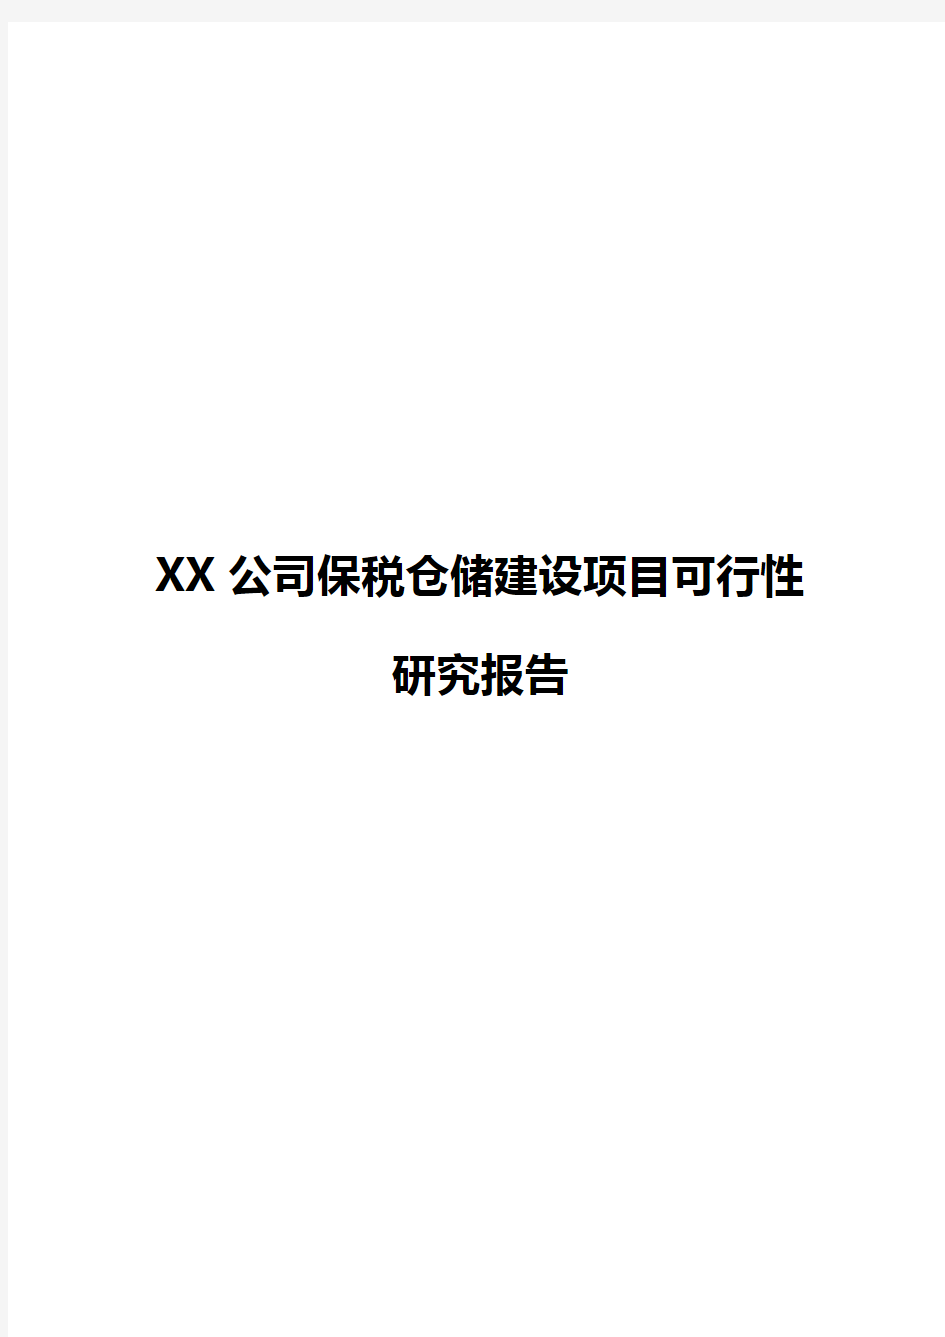 【新版】XX公司保税仓储工程建设项目可行性研究报告